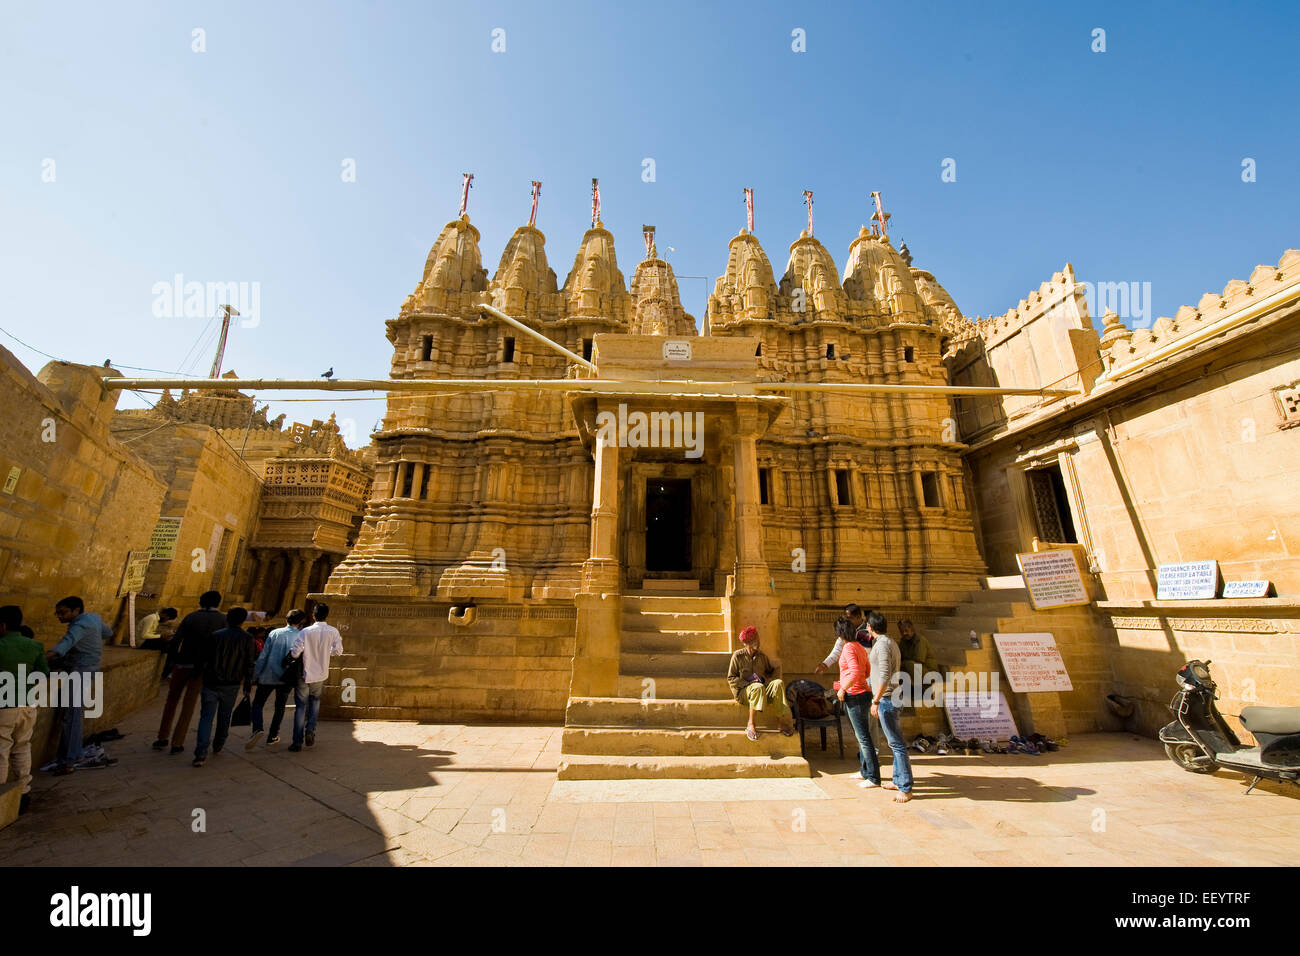 India, Rajasthan, Jaisalmer, Jain temple Stock Photo